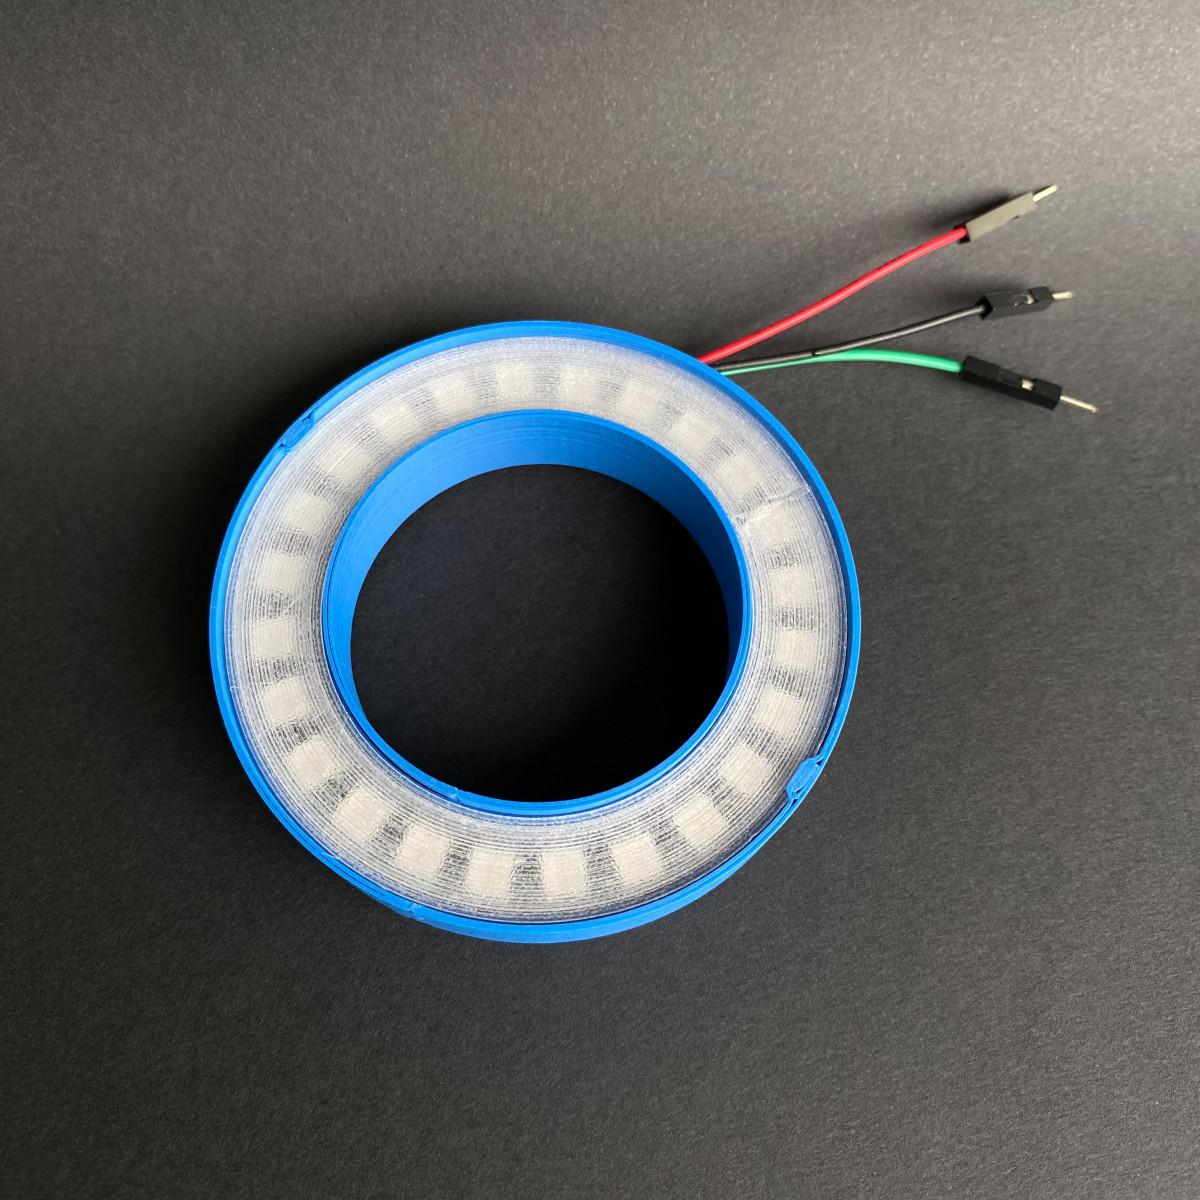 NeoPixel ring case (24 LEDs, 73mm outer diameter) 3d model